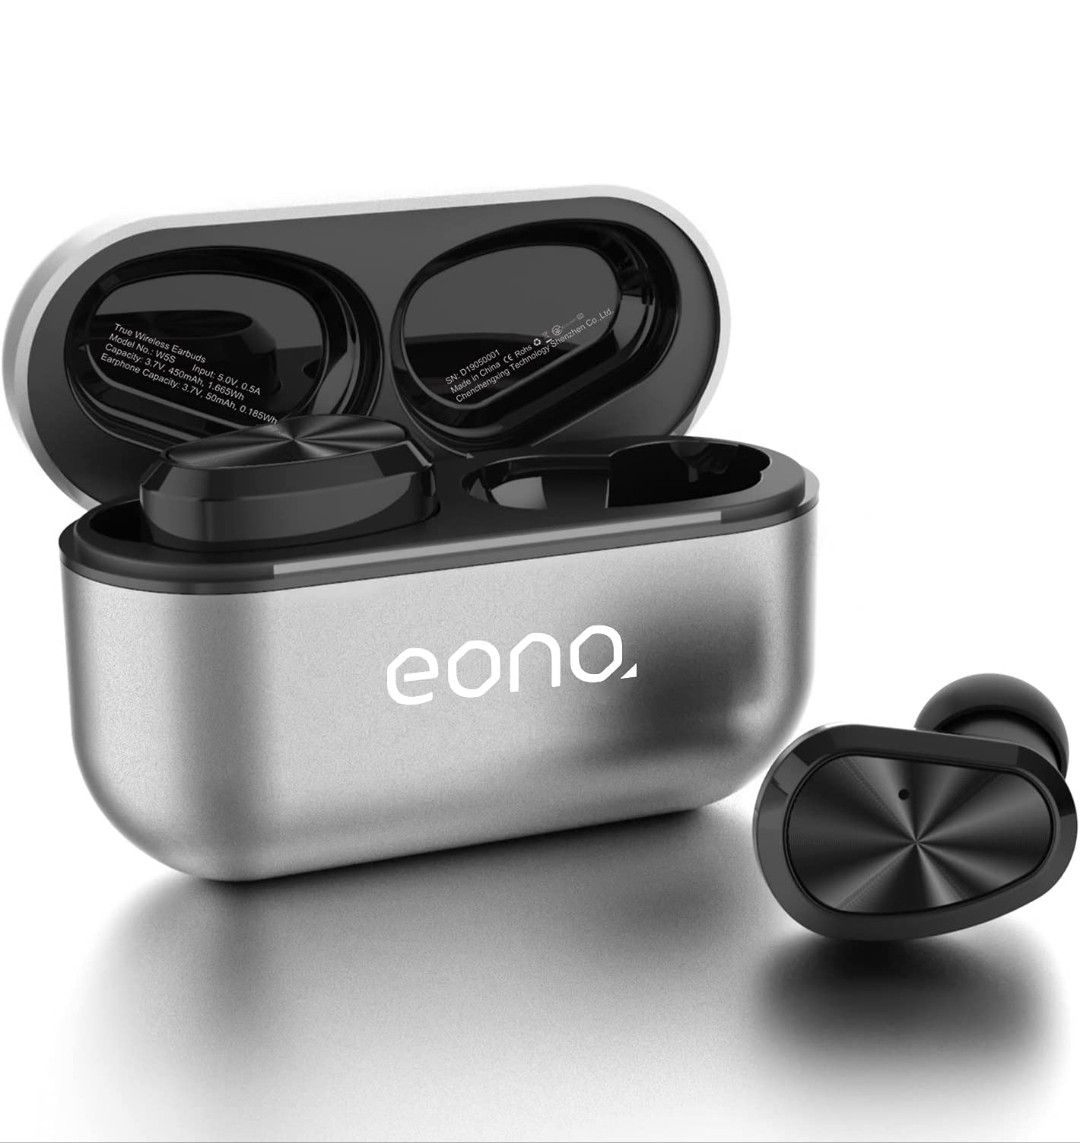 Eono(イオーノ) Bluetooth イヤホン Eonobuds 完全ワイヤレスイヤホン IPX7防水仕様